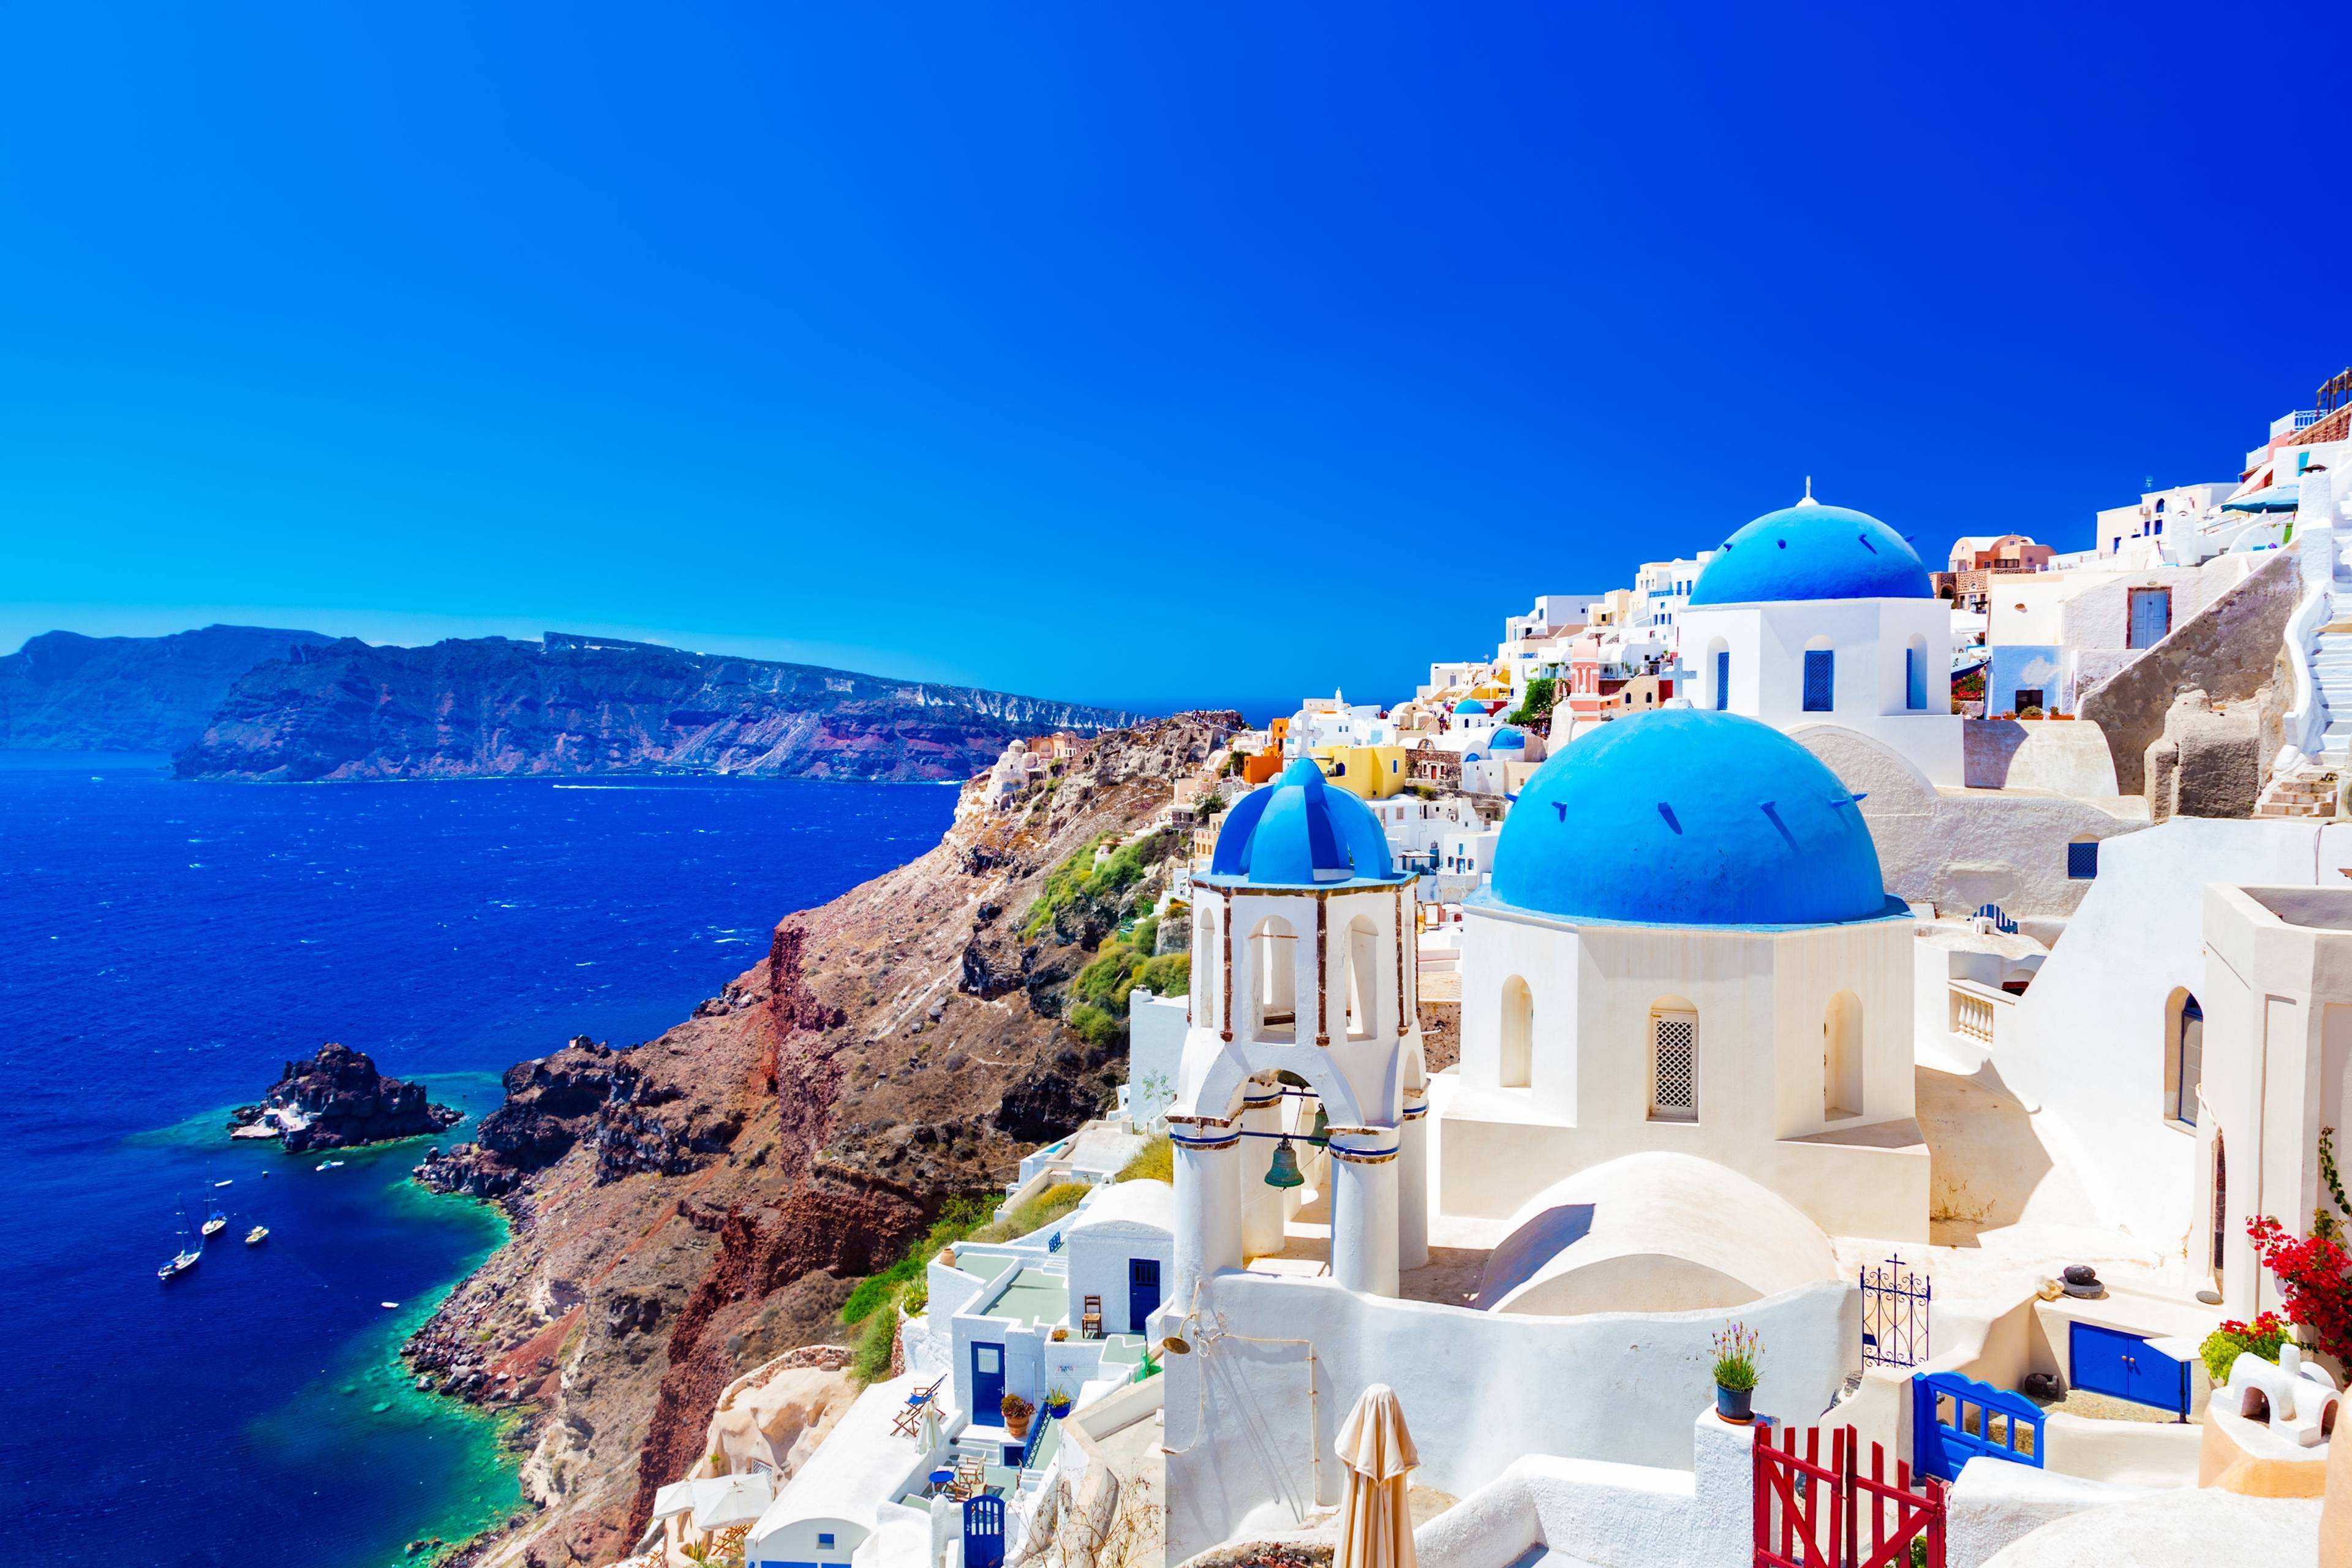 Vista panoramica delle case bianche e blu di Santorini in Grecia